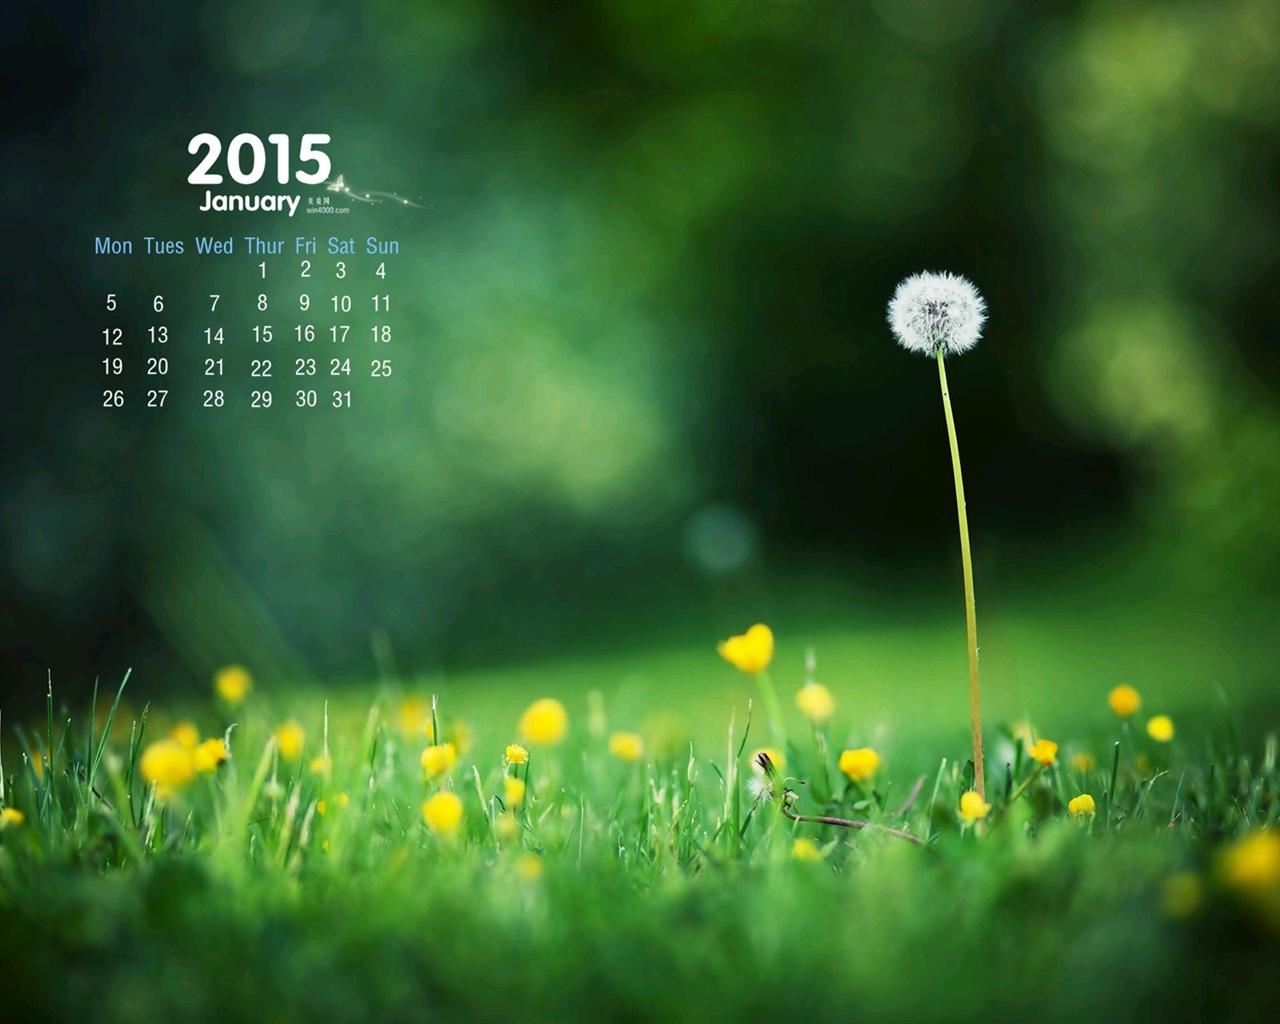 01 2015 fondos de escritorio calendario (1) #15 - 1280x1024